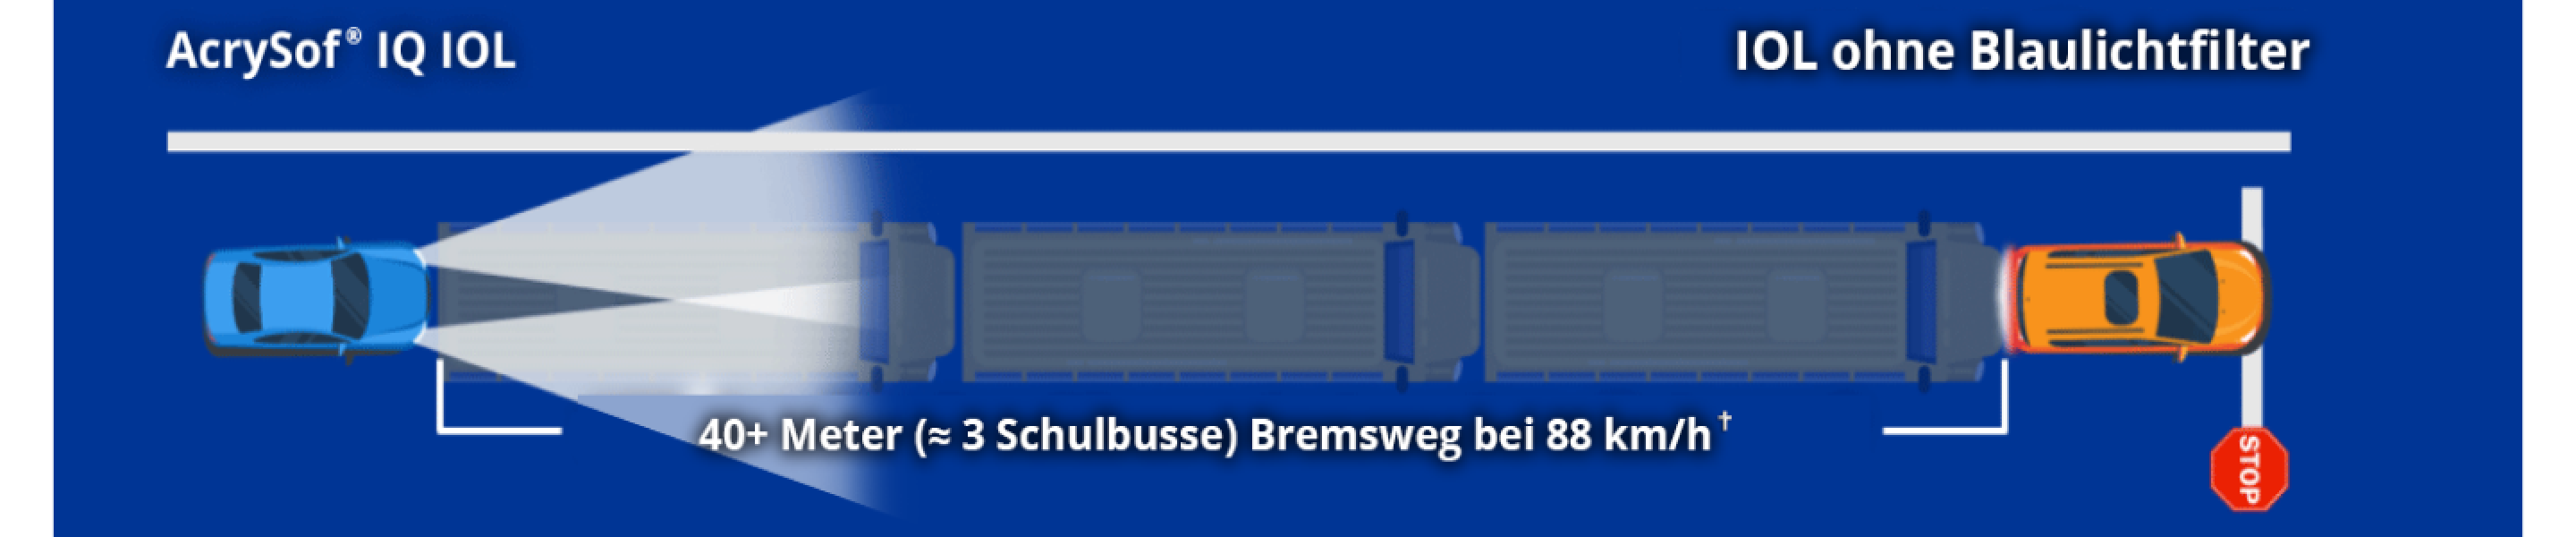 Die Illustration zeigt ein Auto mit der Aufschrift AcrySof IQ IOL und ein Auto mit der Aufschrift nicht-blaulichtfilternde IOL. Der Text auf dem Bildschirm lautet: "40+ Meter (~3 Schulbusse) Anhalteweg bei 88 km/h".